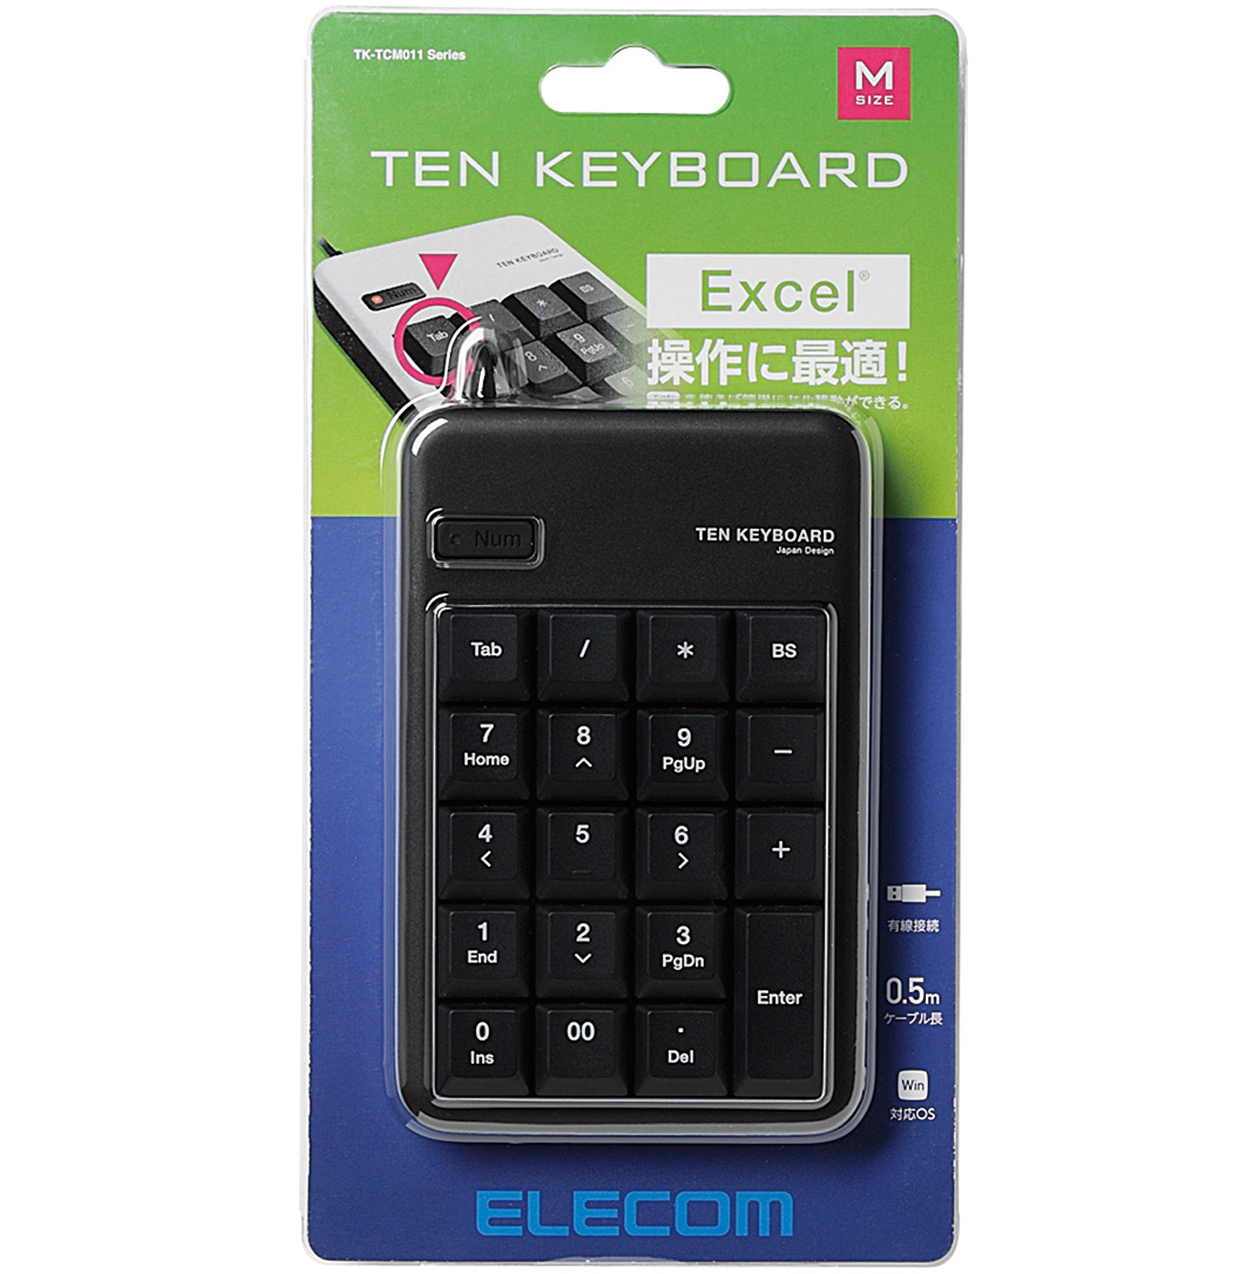 USBテンキーボード | エレコムダイレクトショップ本店はPC周辺機器メーカー「ELECOM」の直営通販サイト